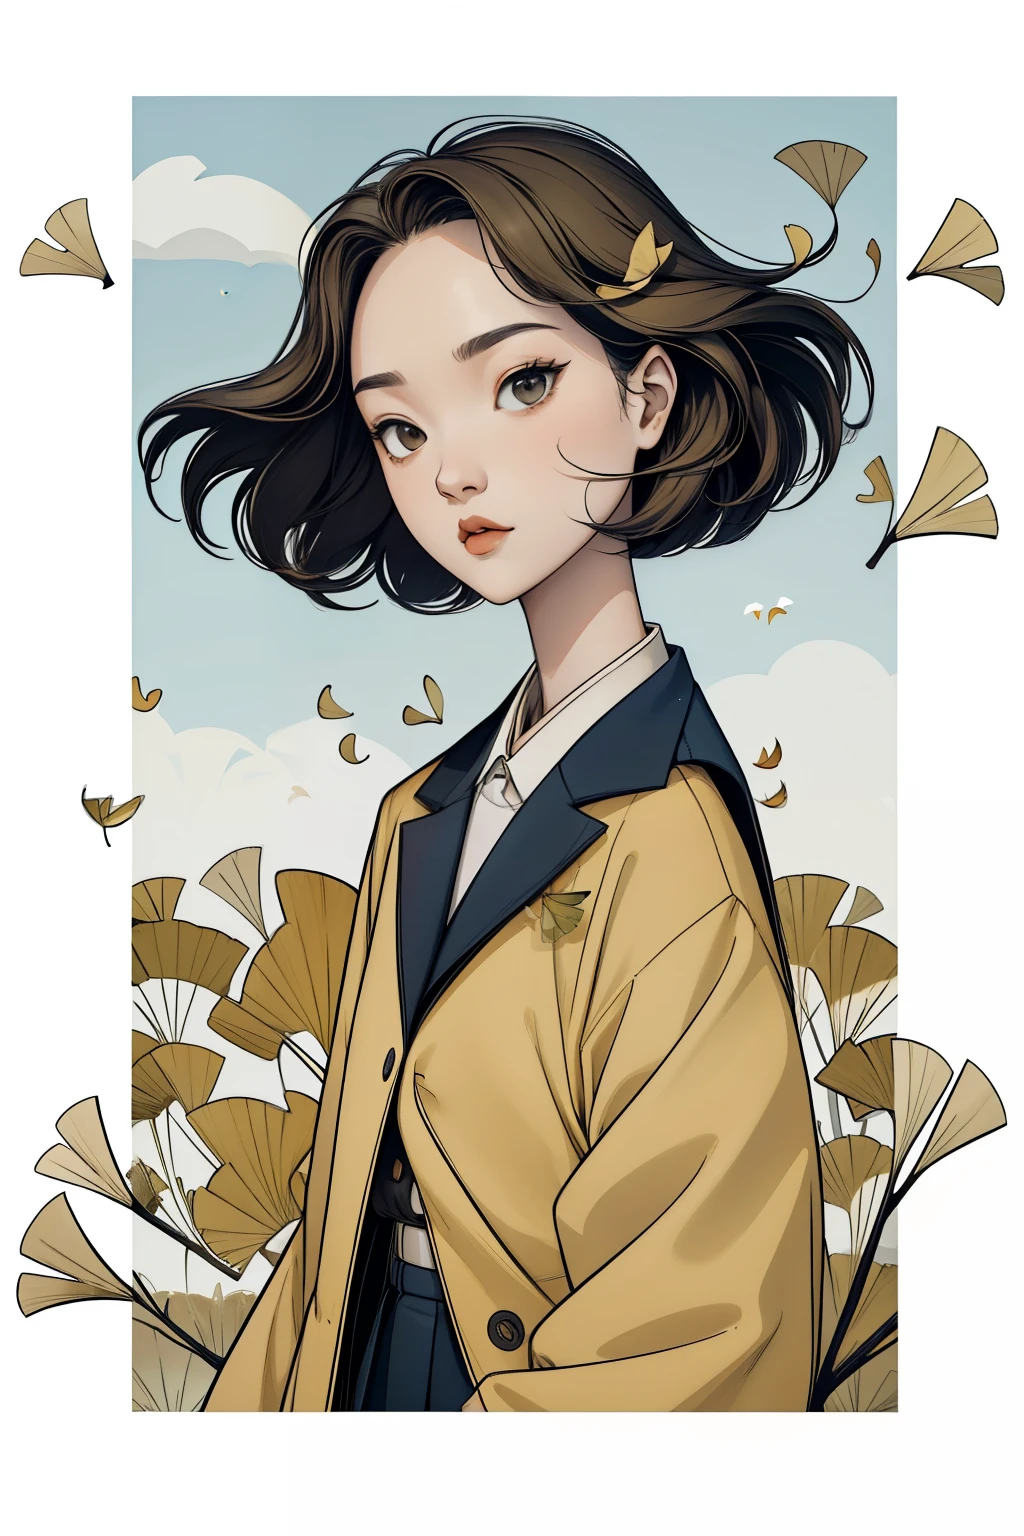 秋の銀杏の木の下の少女，肖像画，強風で落ちるイチョウの葉，空を舞うイチョウの葉